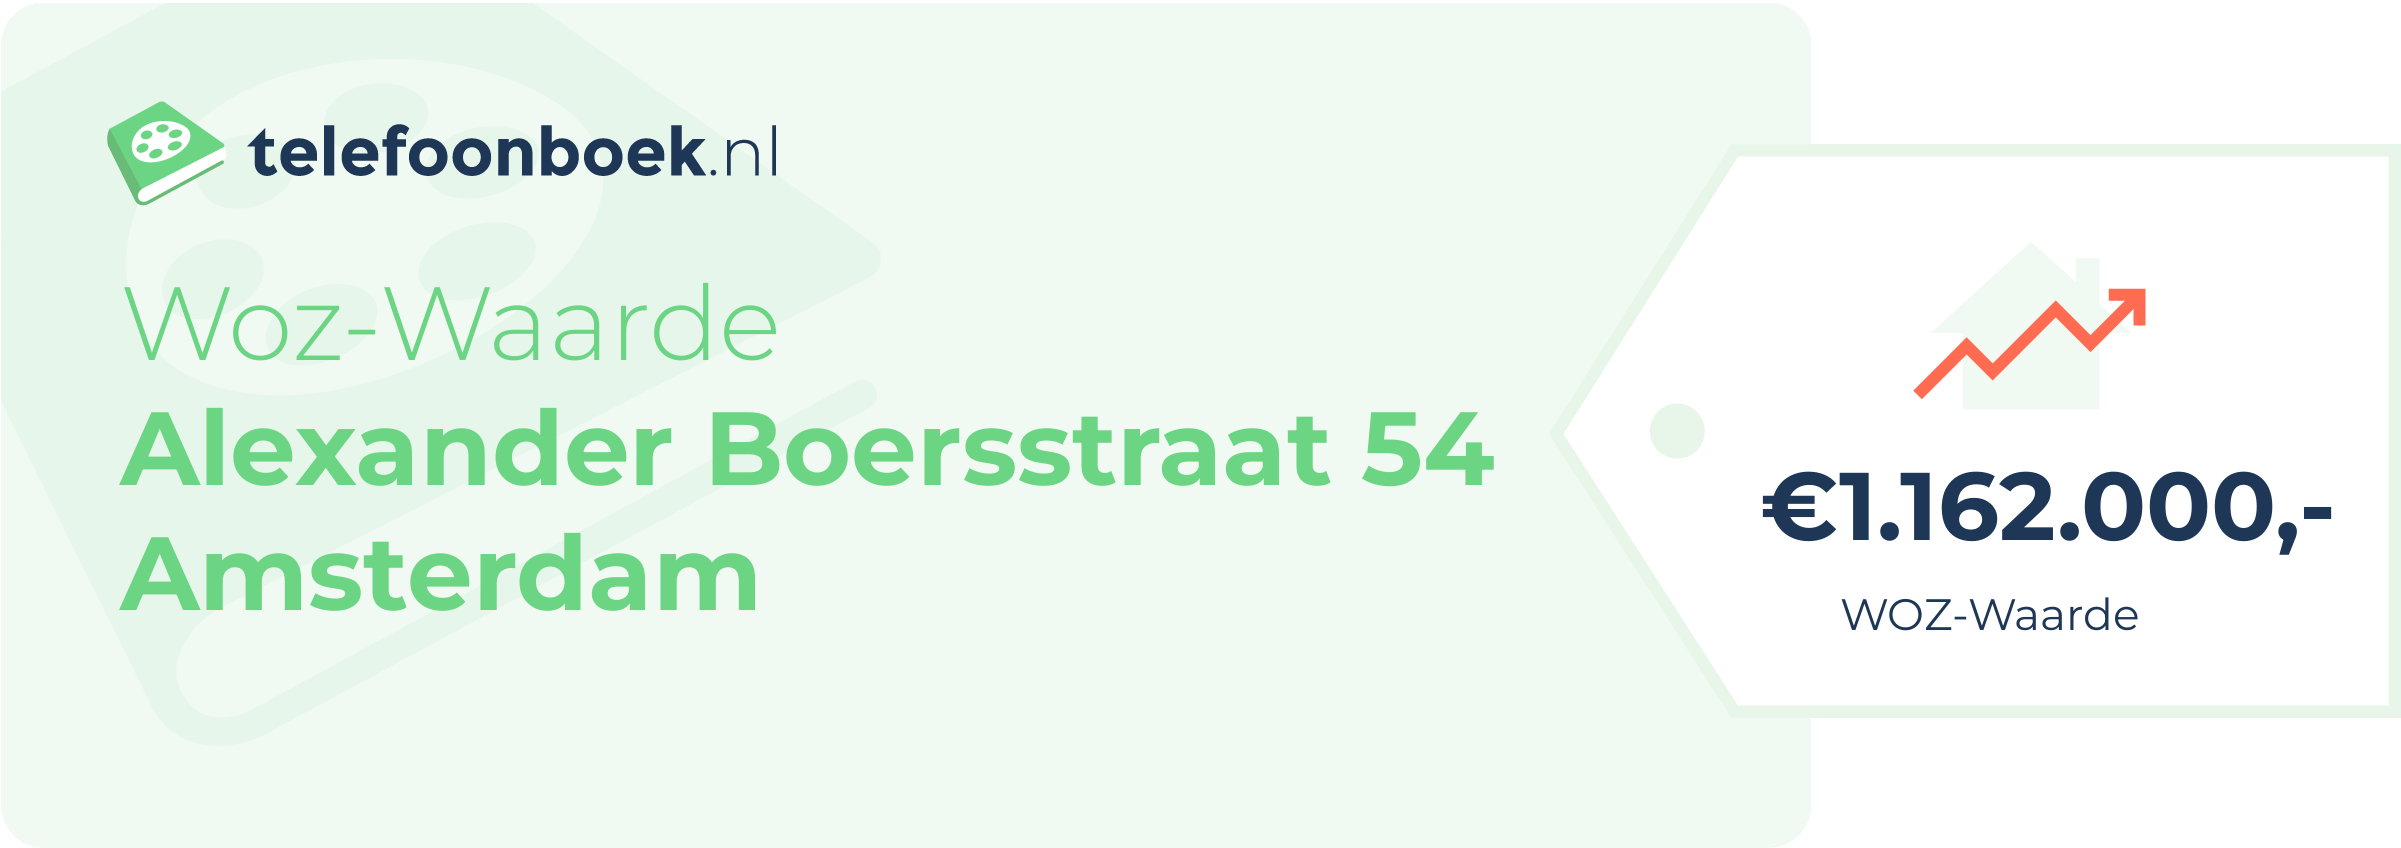 WOZ-waarde Alexander Boersstraat 54 Amsterdam